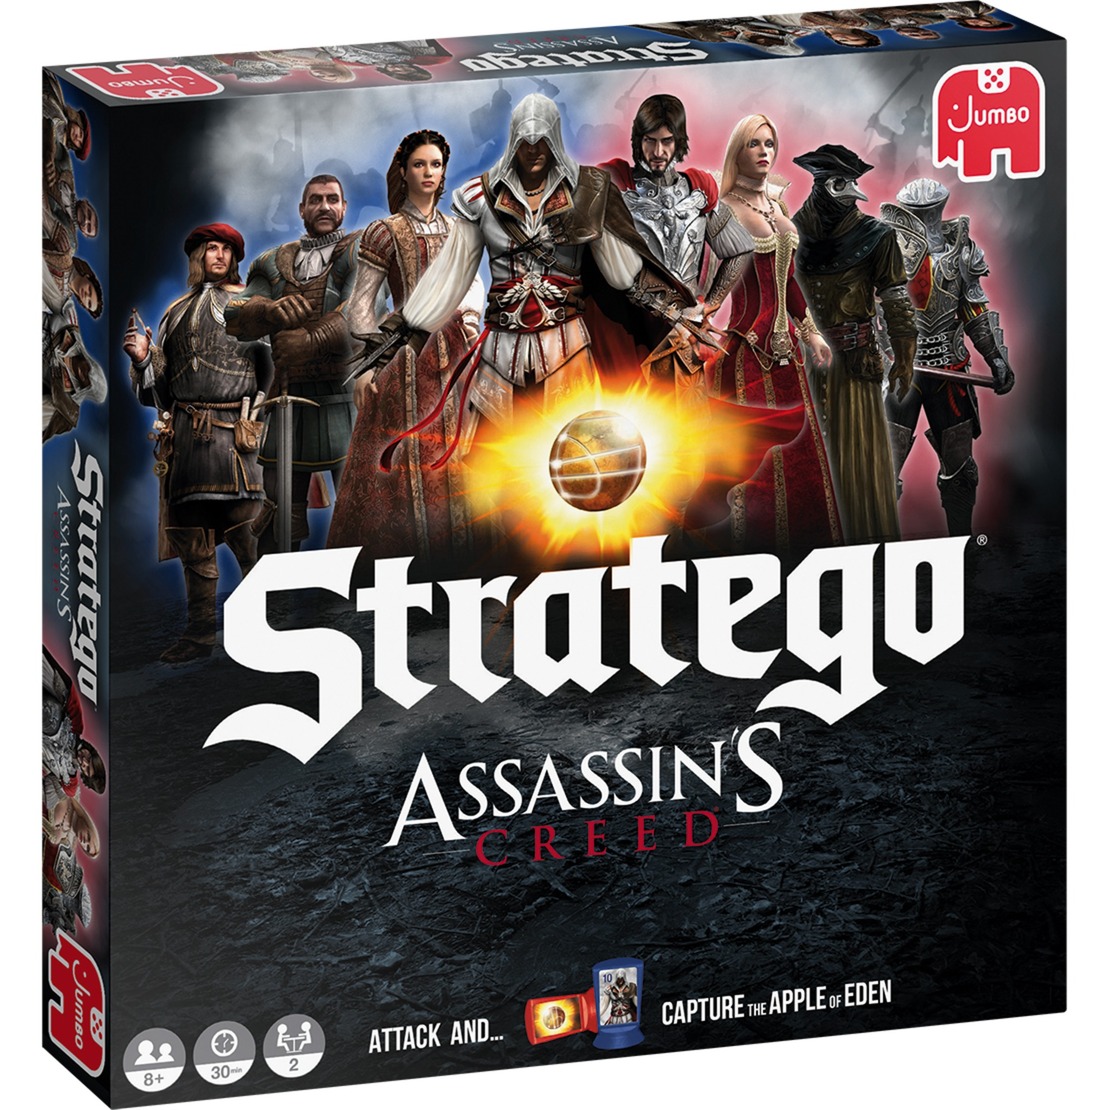 Image of Alternate - Stratego Assassin''s Creed, Brettspiel online einkaufen bei Alternate